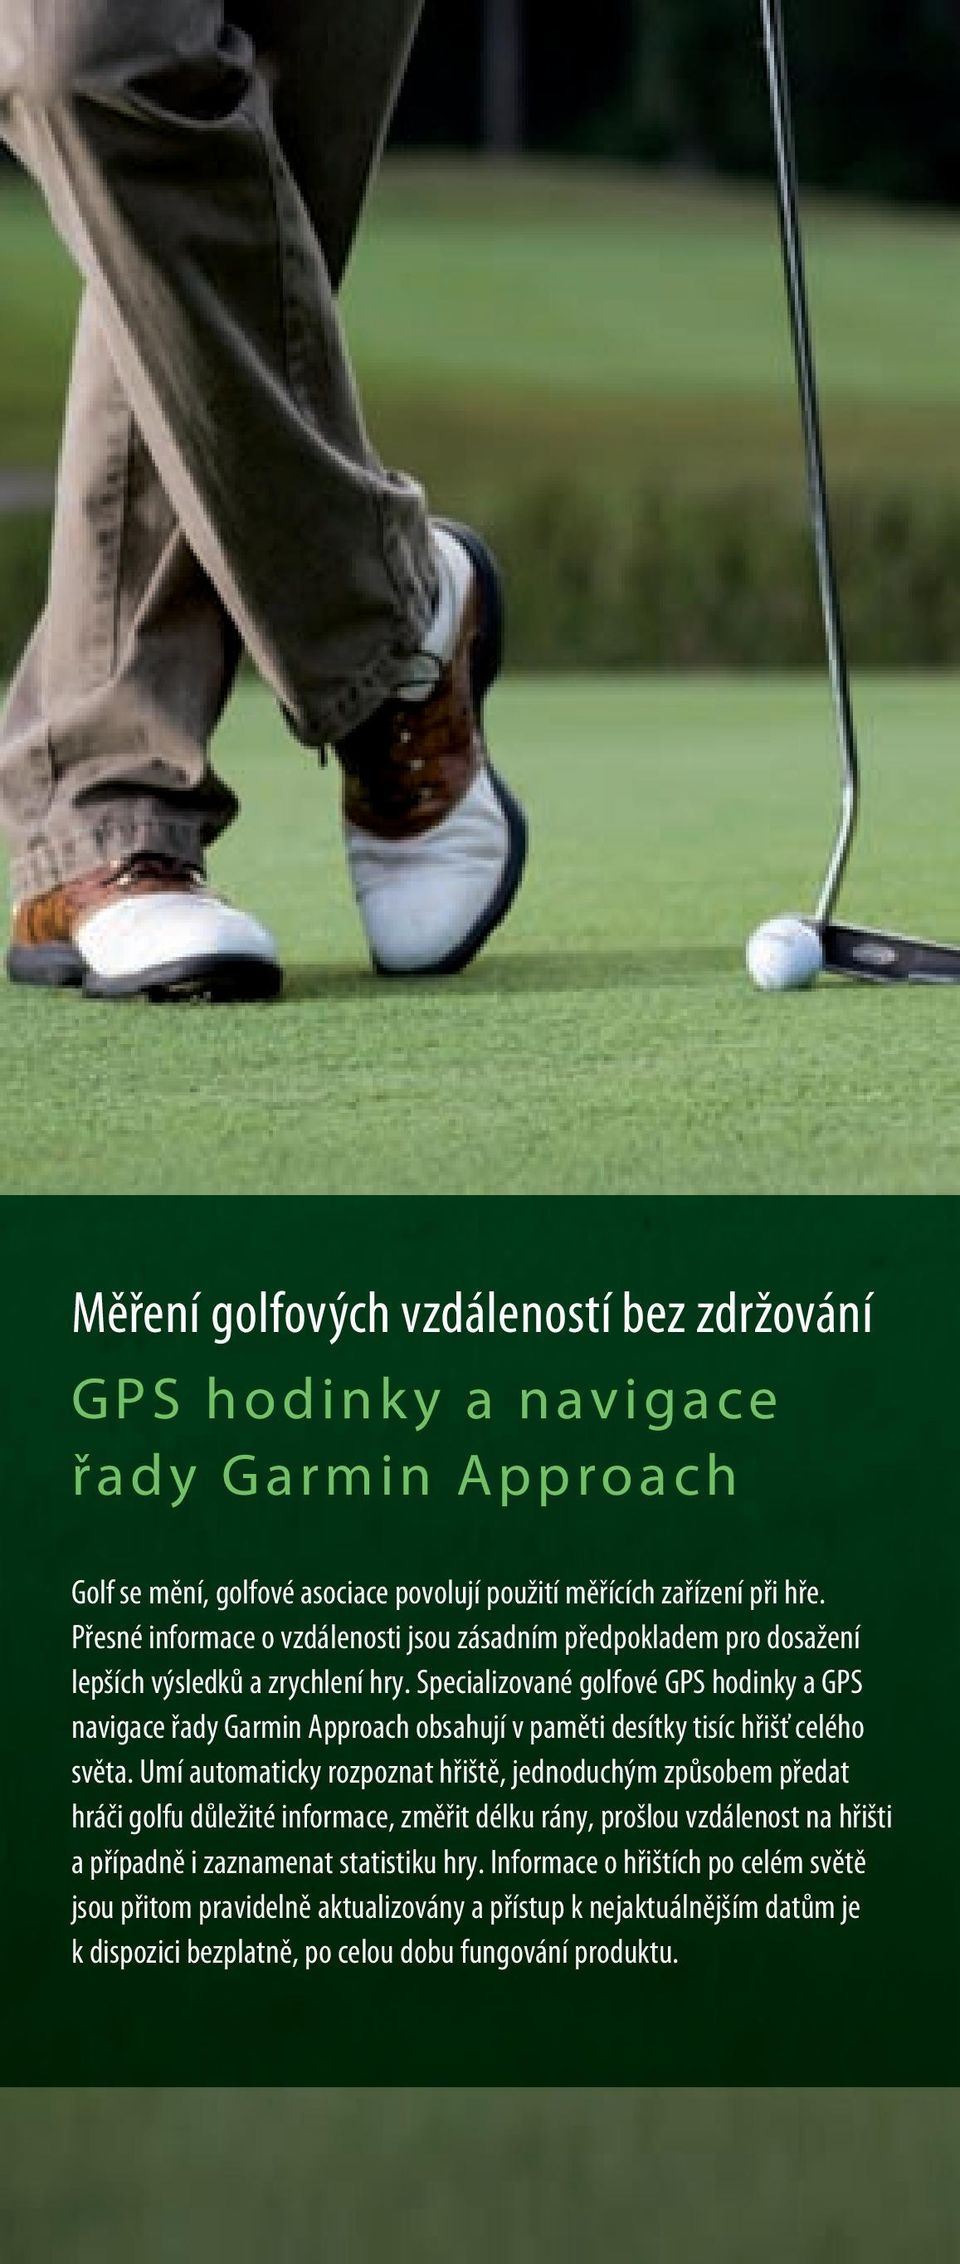 Specializované golfové GPS hodinky a GPS navigace řady Garmin Approach obsahují v paměti desítky tisíc hřišť celého světa.